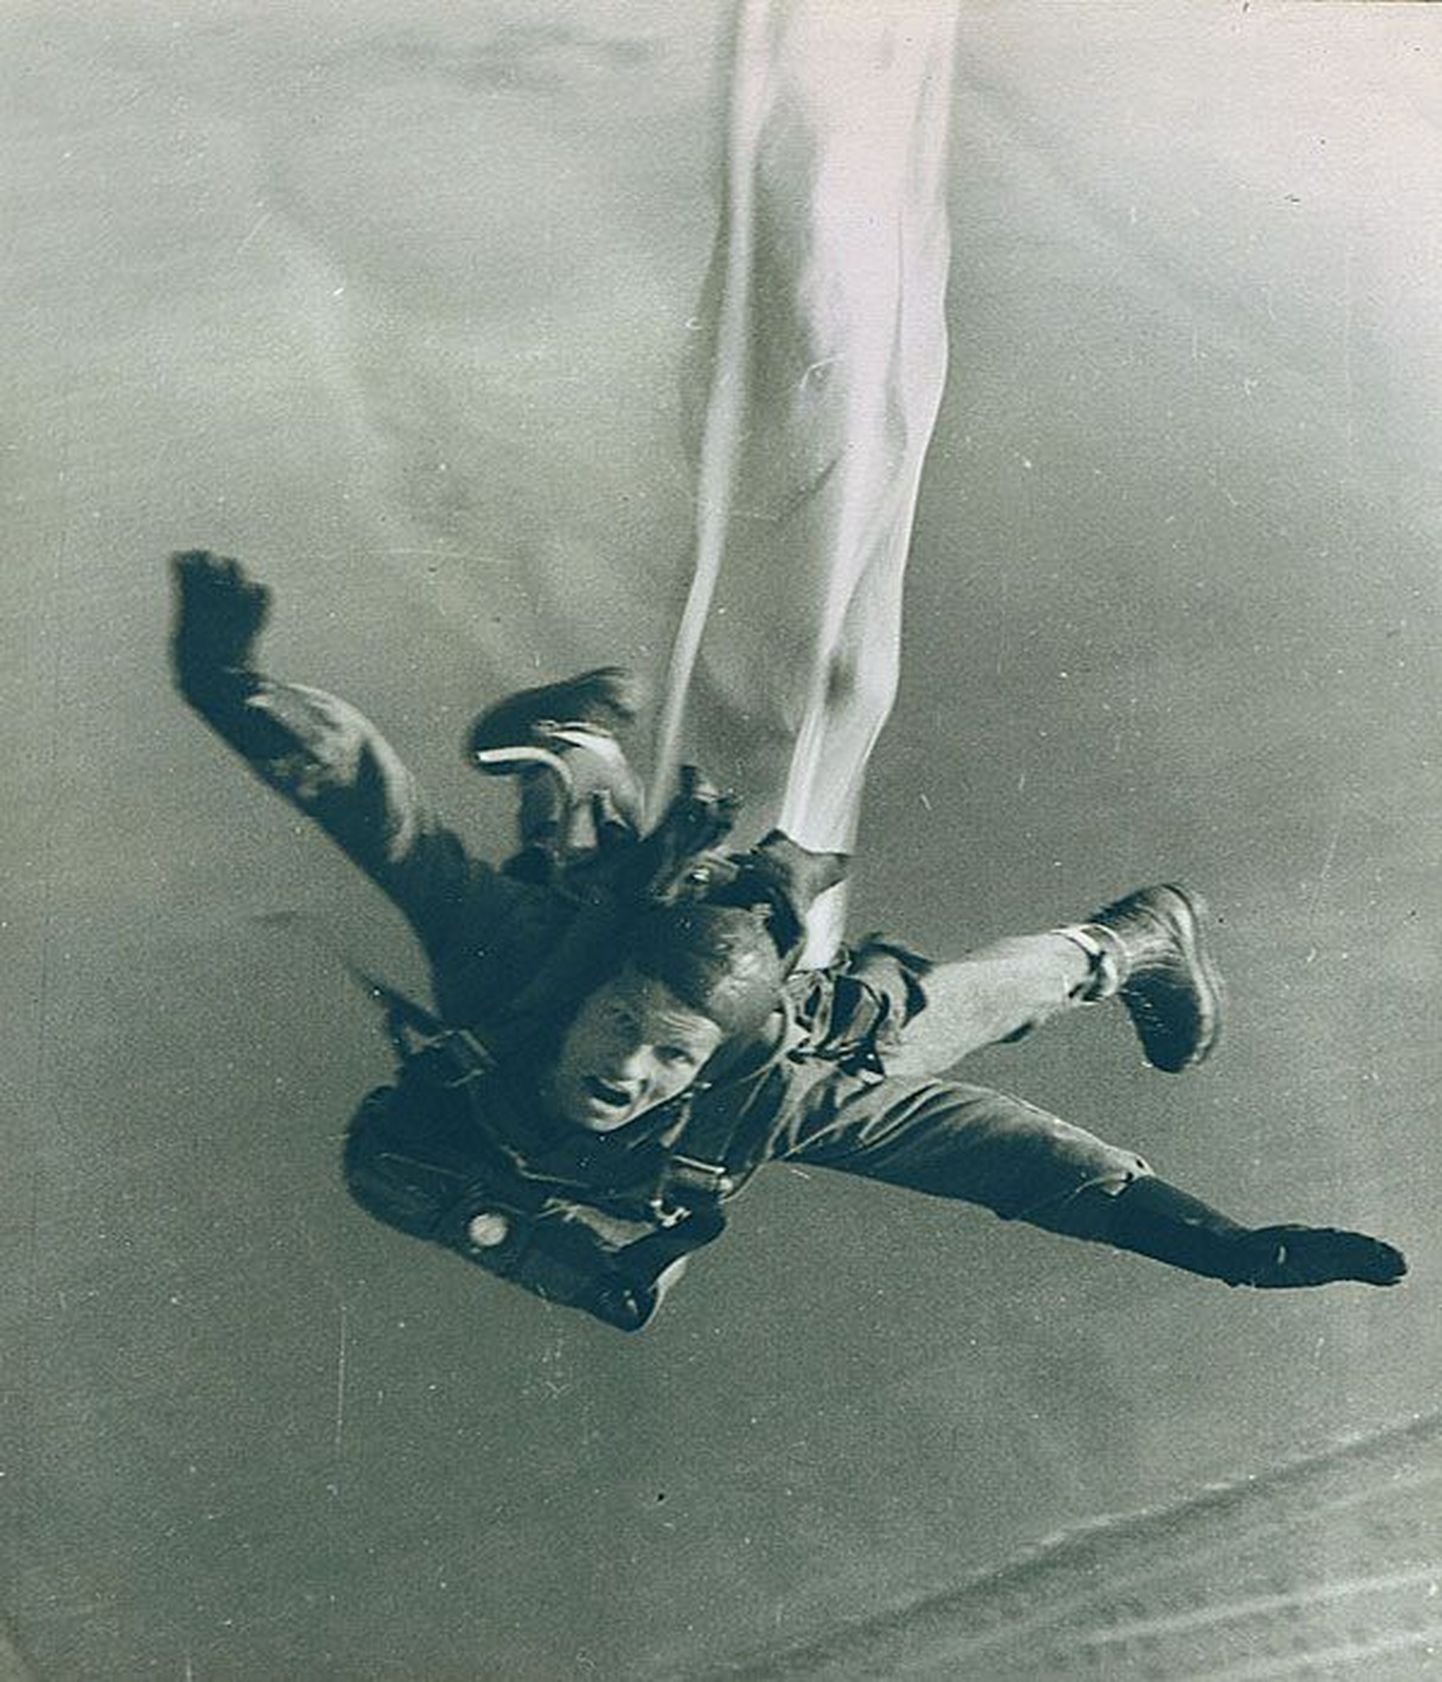 Тынис Каллеярв в прыжке. Если бы в 1968 году он не получил травму позвоночника, наверняка прыгал бы с парашютом до последних дней жизни. Каллеярв покинул этот мир в 2006 году.